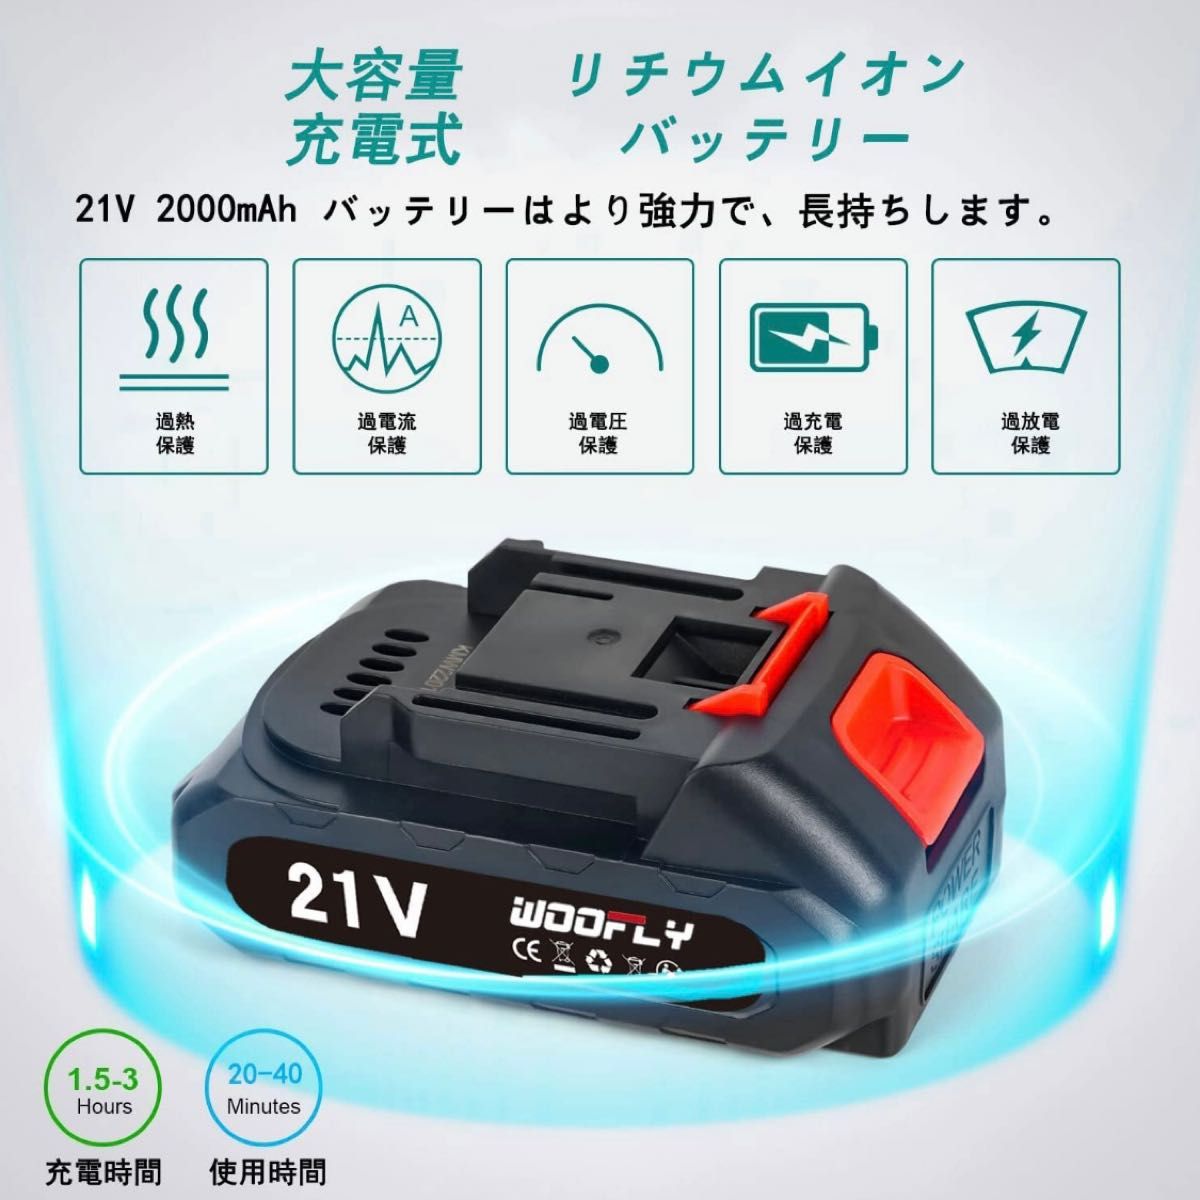 【新品未使用】ミニ電動チェーンソー 充電式 6インチ 21V 2000mAh